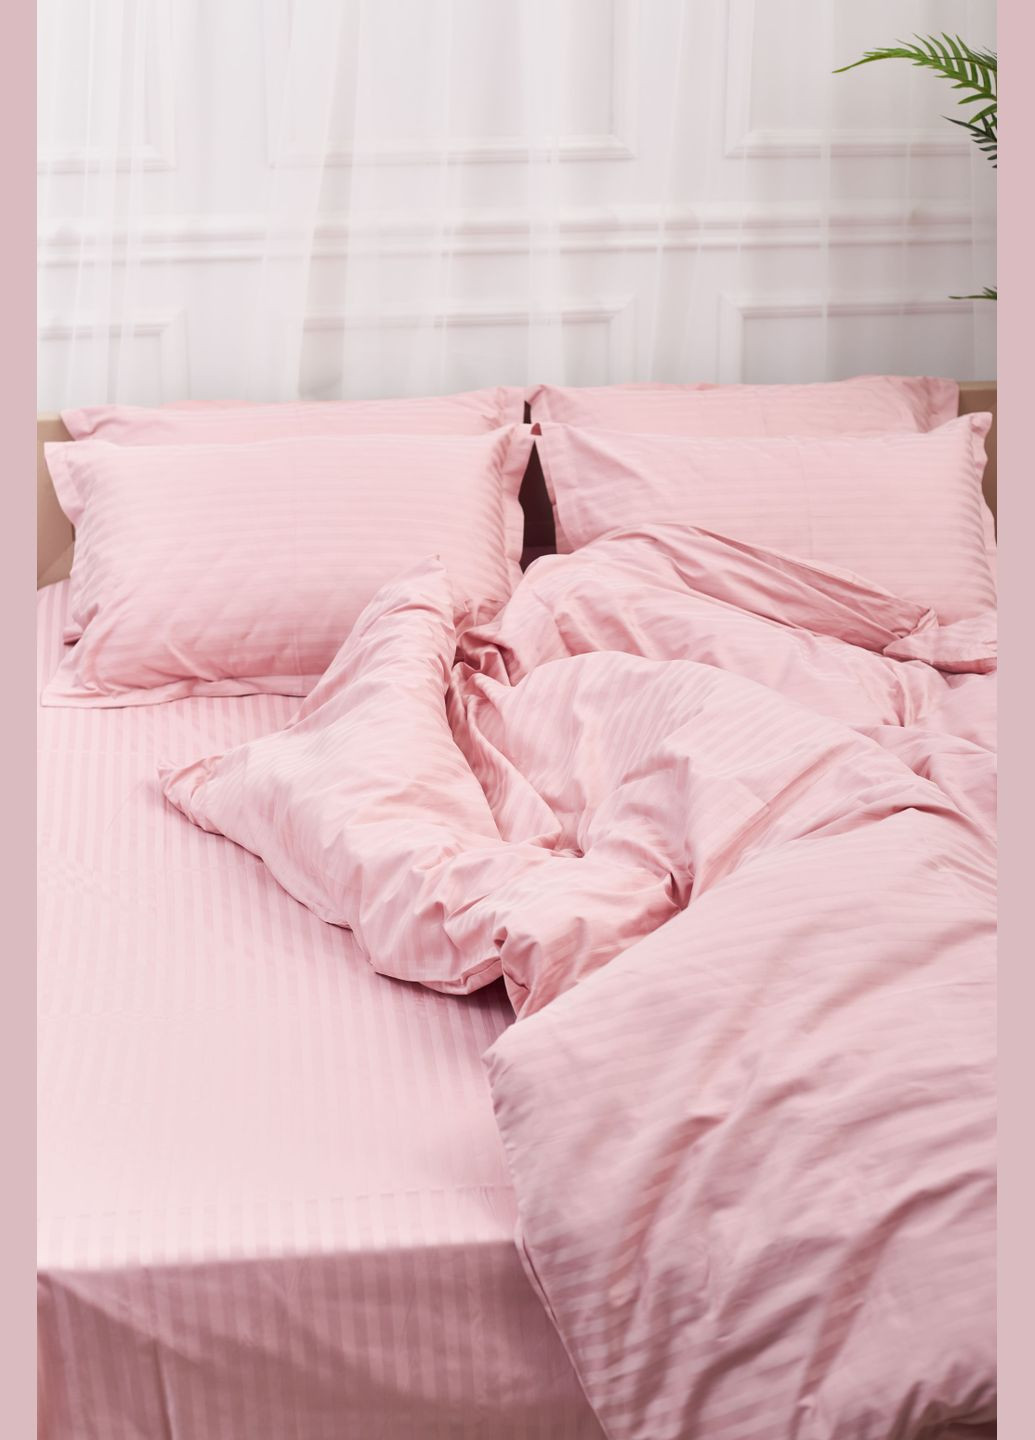 Комплект постельного белья Satin Stripe евро 200х220 наволочки 2х50х70 (MS-820003616) Moon&Star stripe pink (288043472)